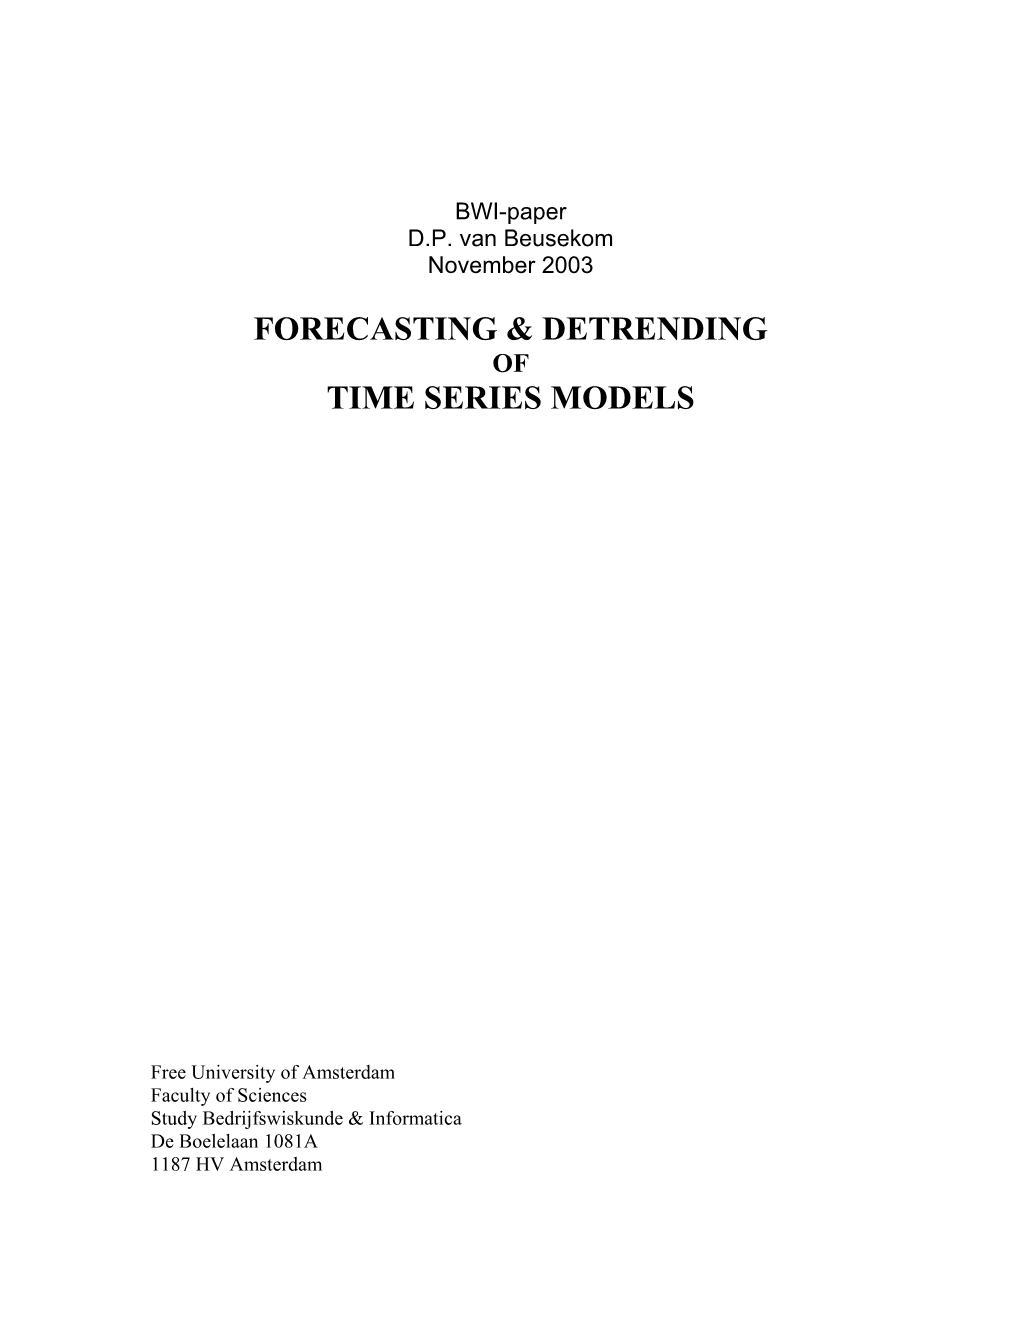 Forecasting & Detrending